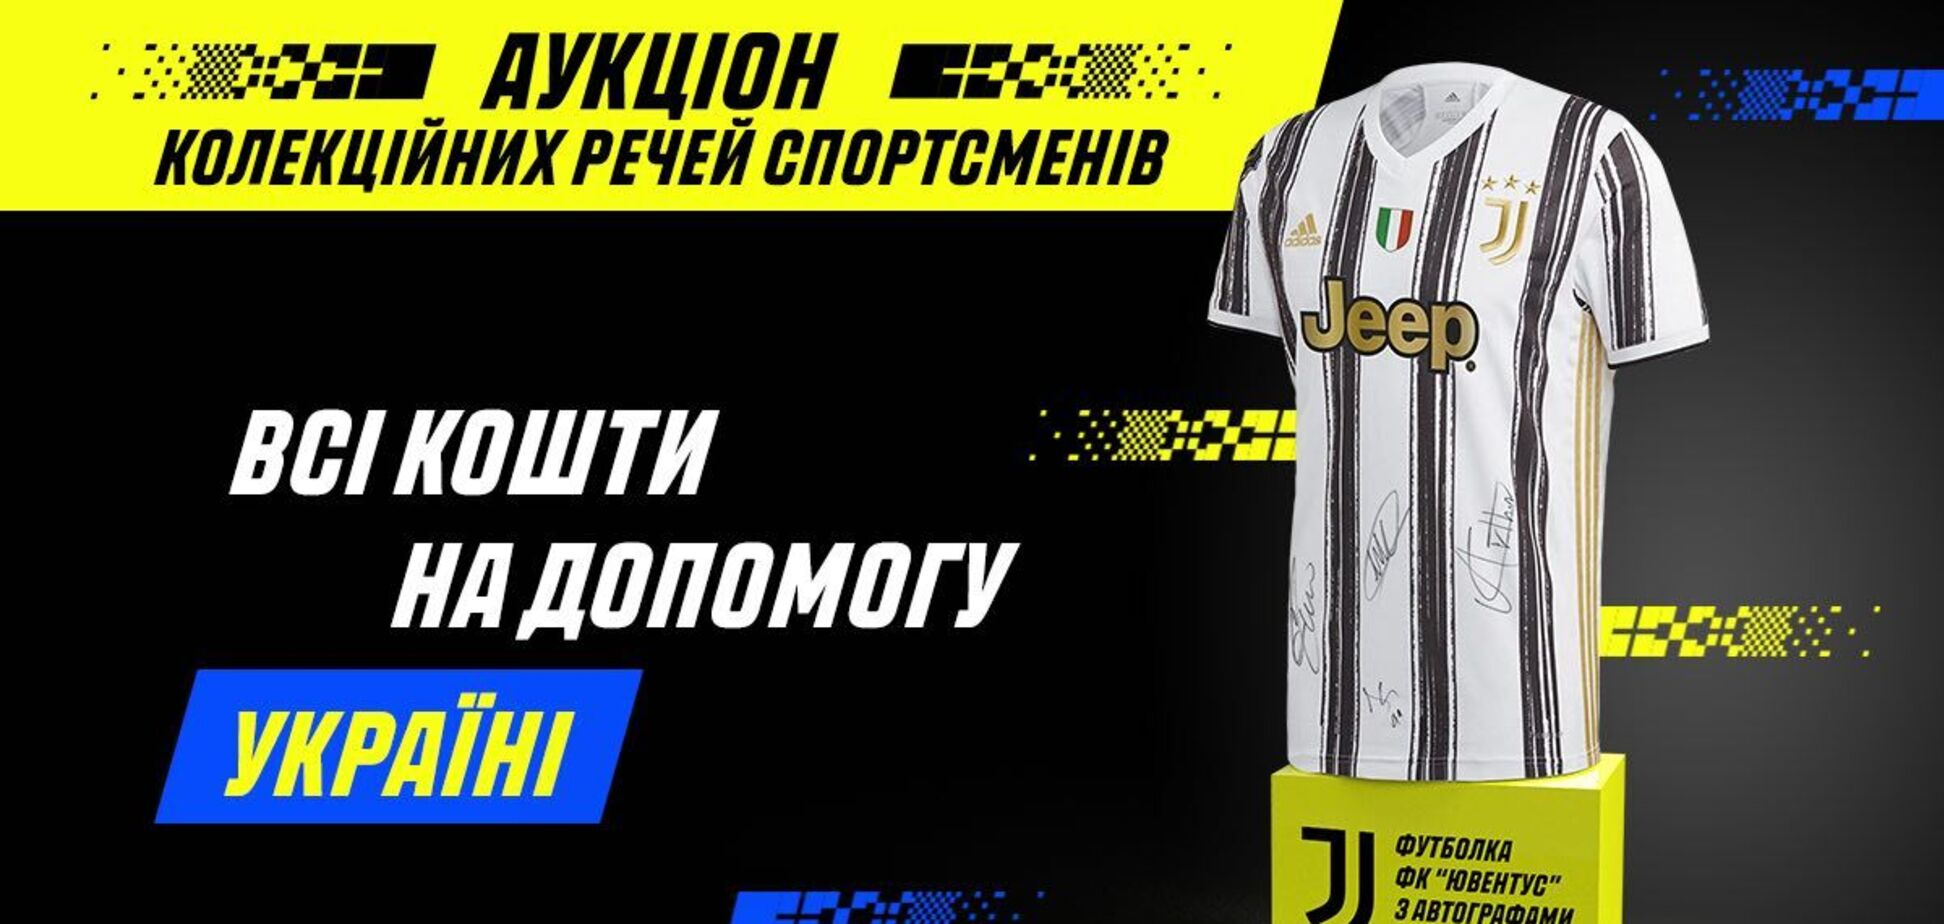 FC Juventus и  Parimatch Ukraine проводят аукцион для помощи украинцам